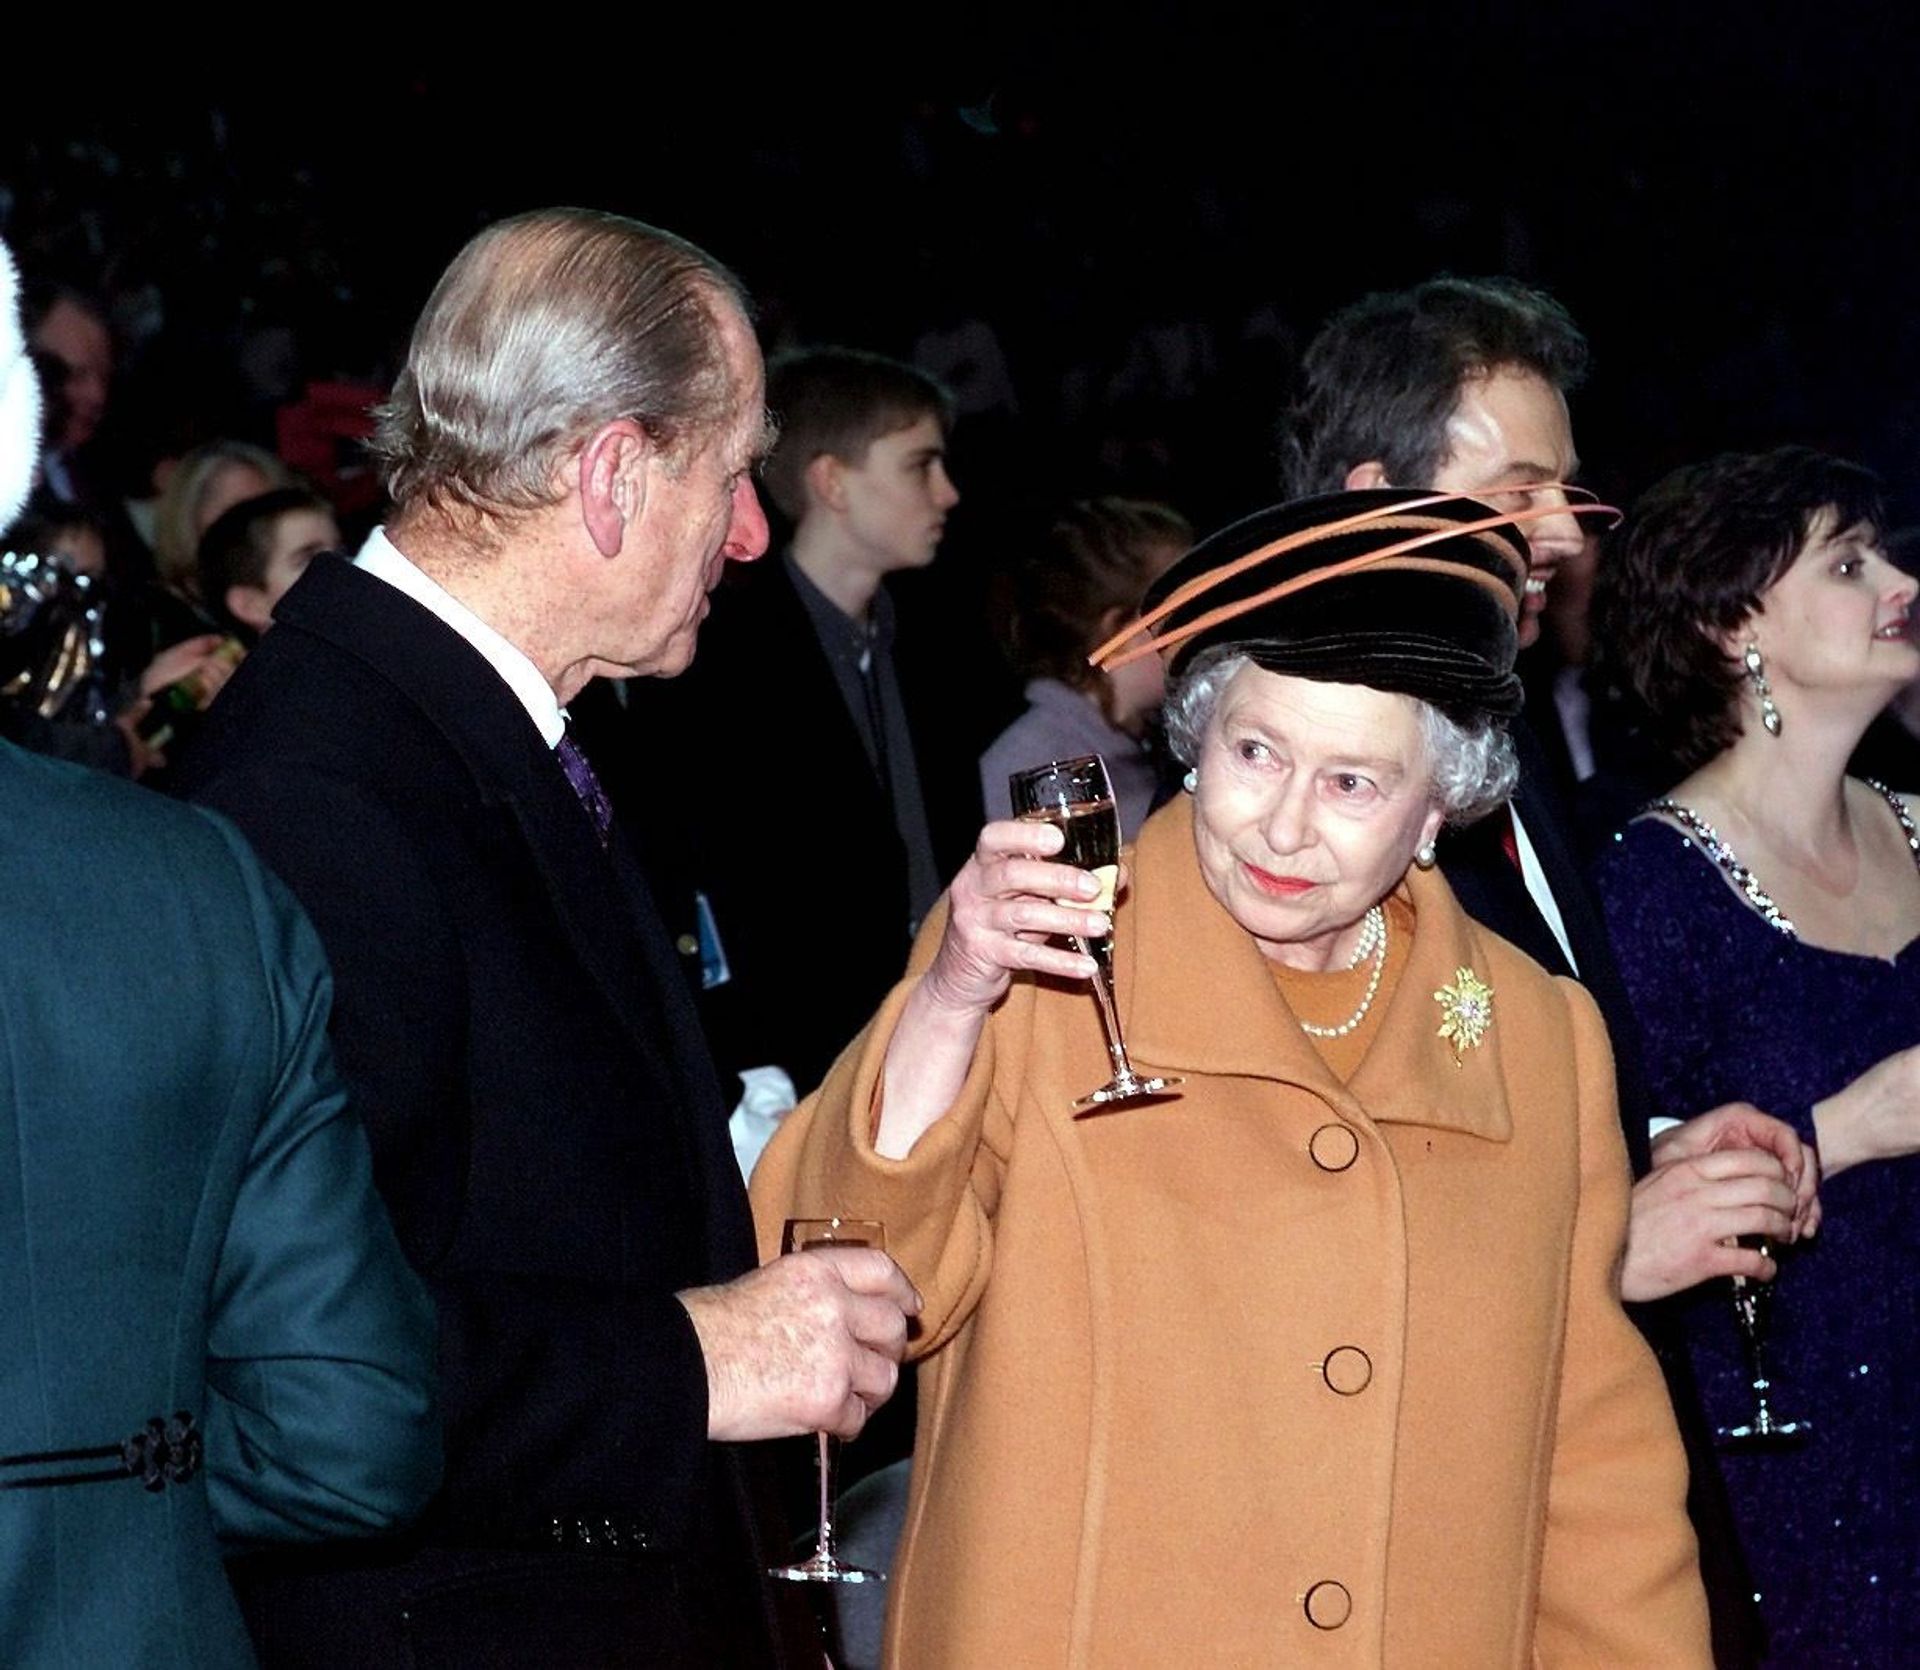 Op naar het nieuwe jaar! Koningin Elizabeth heft haar champagneglas op naar prins Philip om kort voor middernacht 31 december 1999 te proosten op het nieuwe millennium